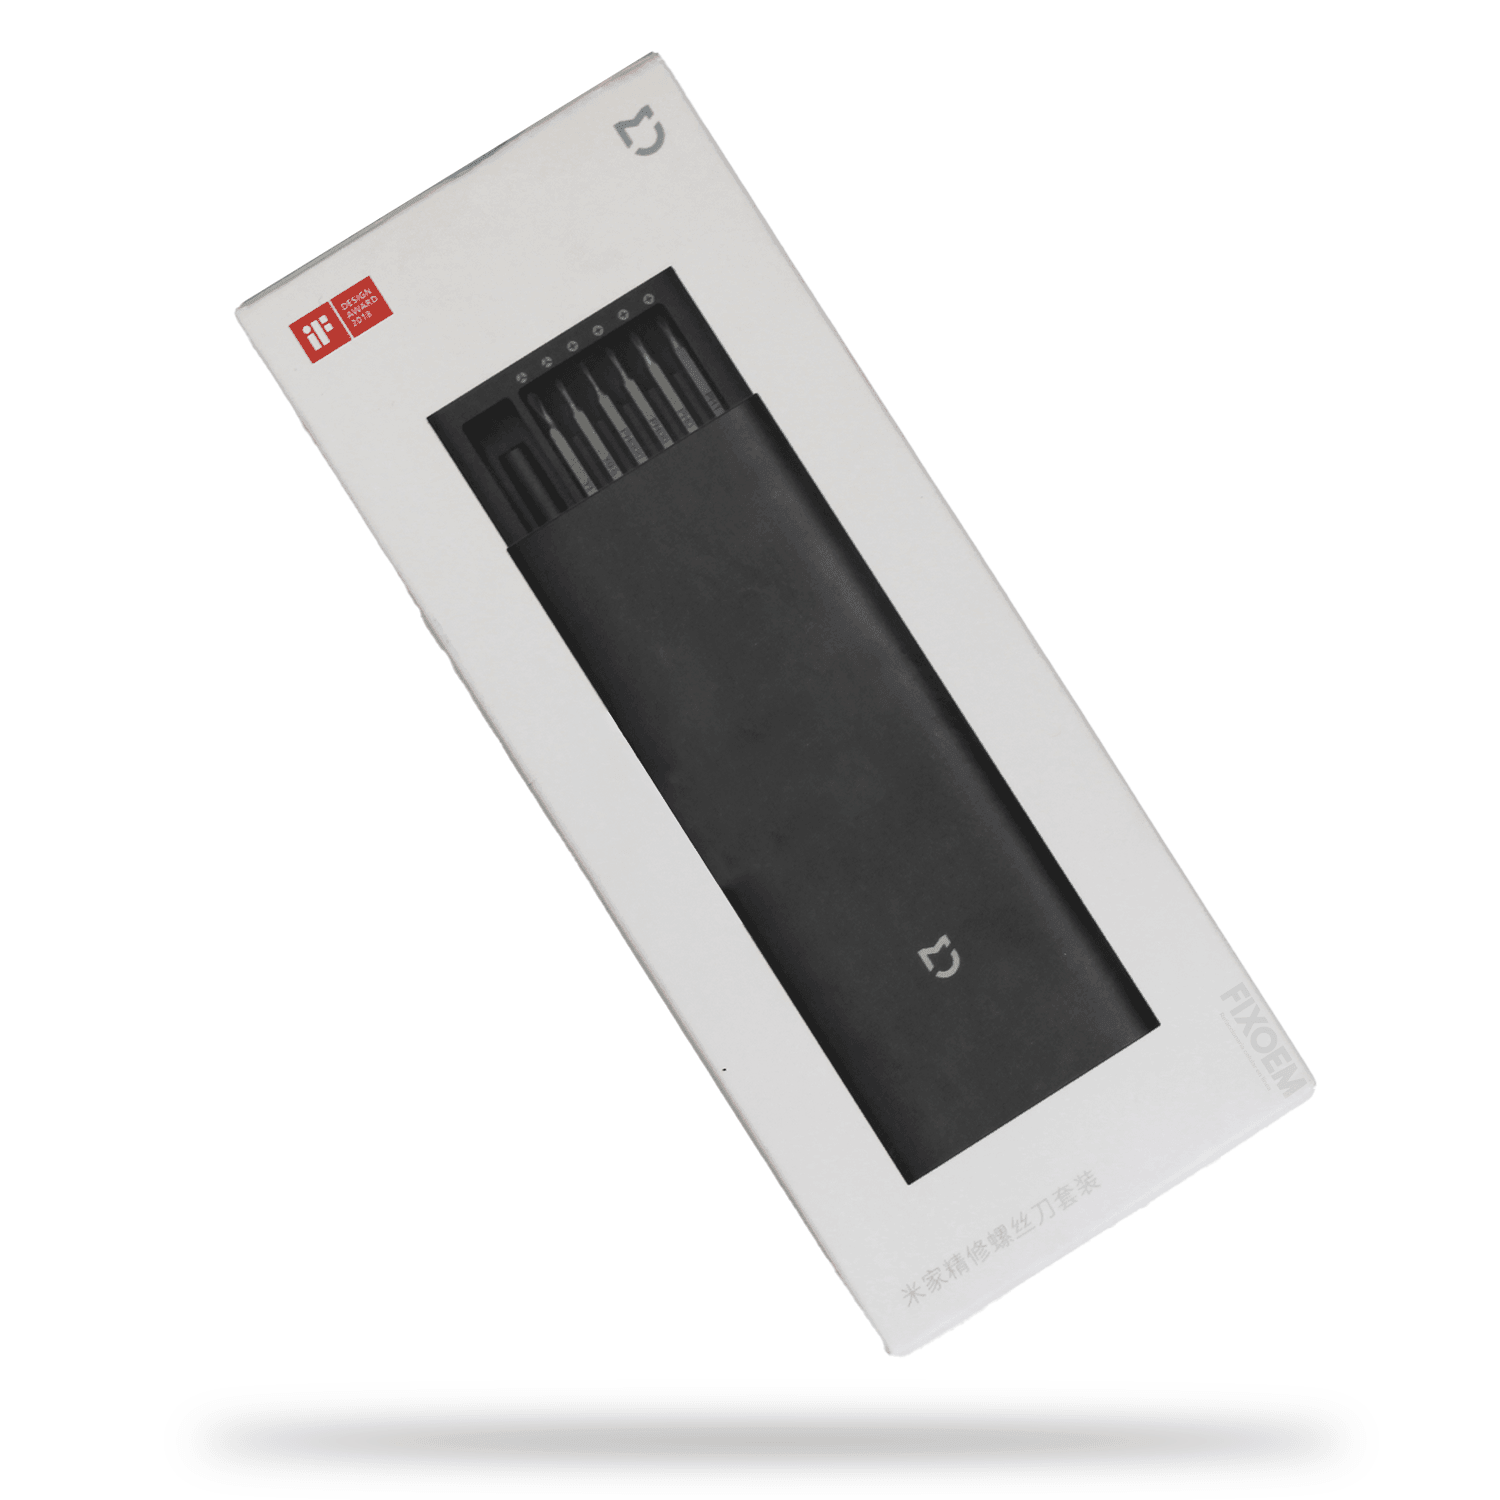 Desarmador Xiaomi Wiha S2 (Manual O Precision) a solo $ 580.00 Refaccion y puestos celulares, refurbish y microelectronica.- FixOEM